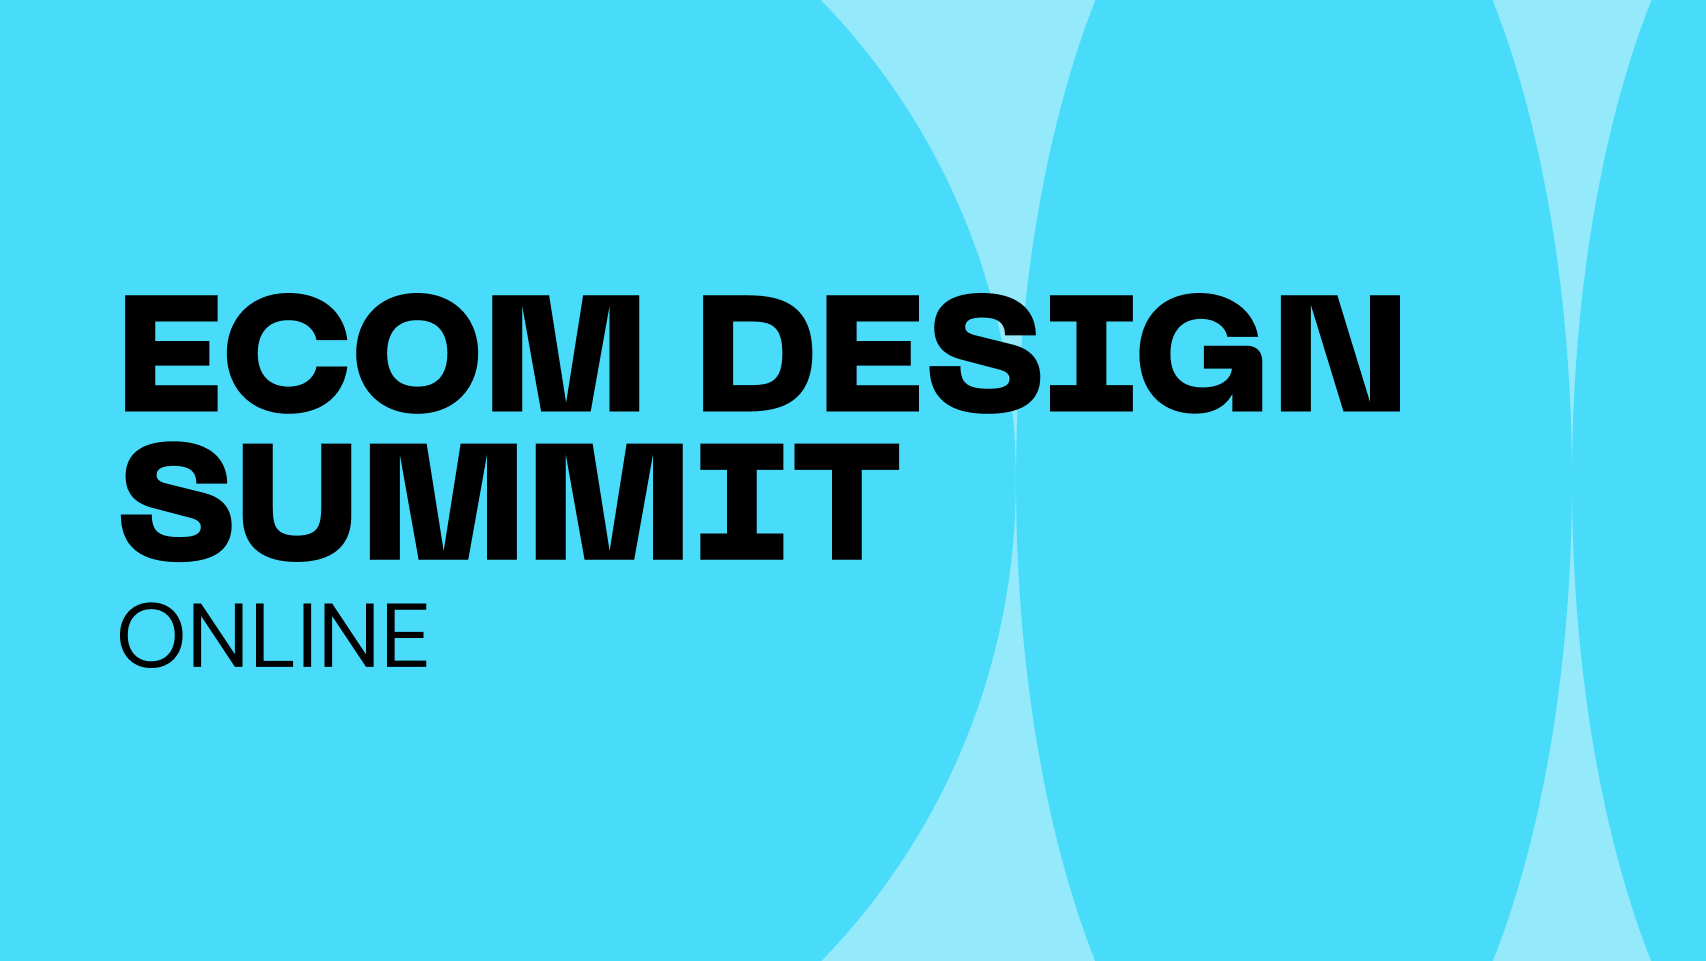 eCom Design Summit Online